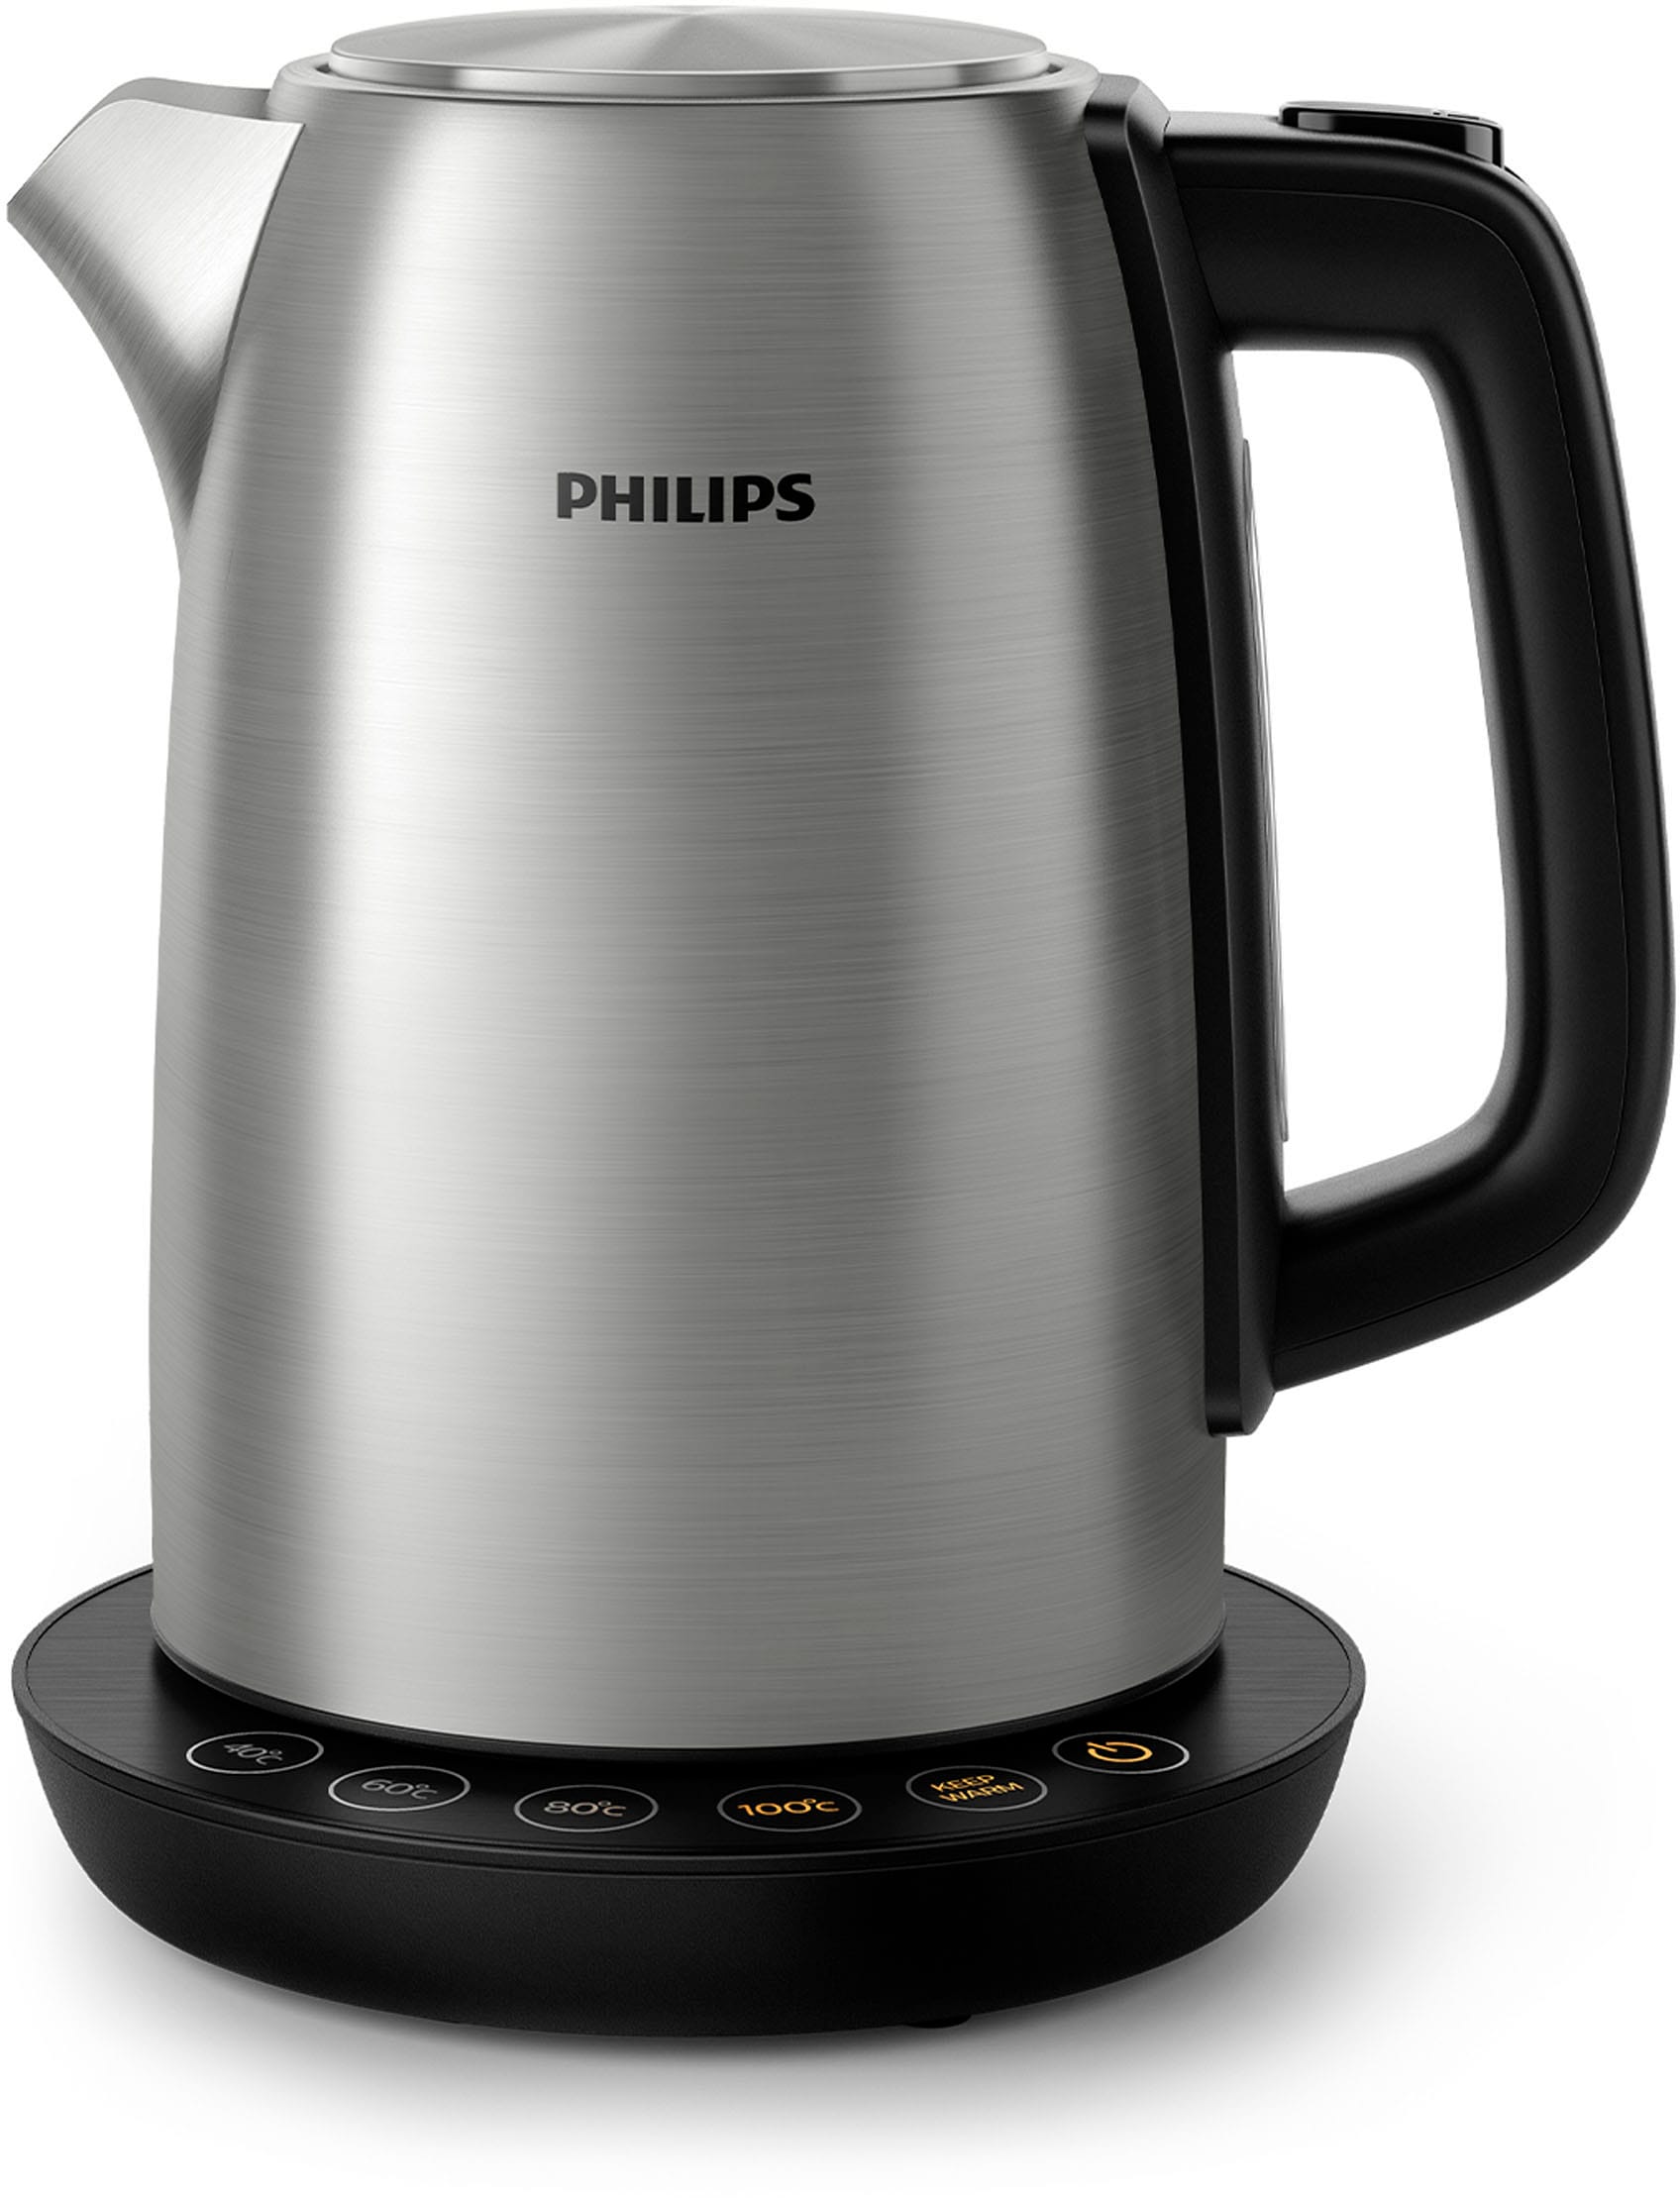 Philips kaufen Liter, Wasserkocher, Raten auf HD9359/90, 2200 1,7 Watt